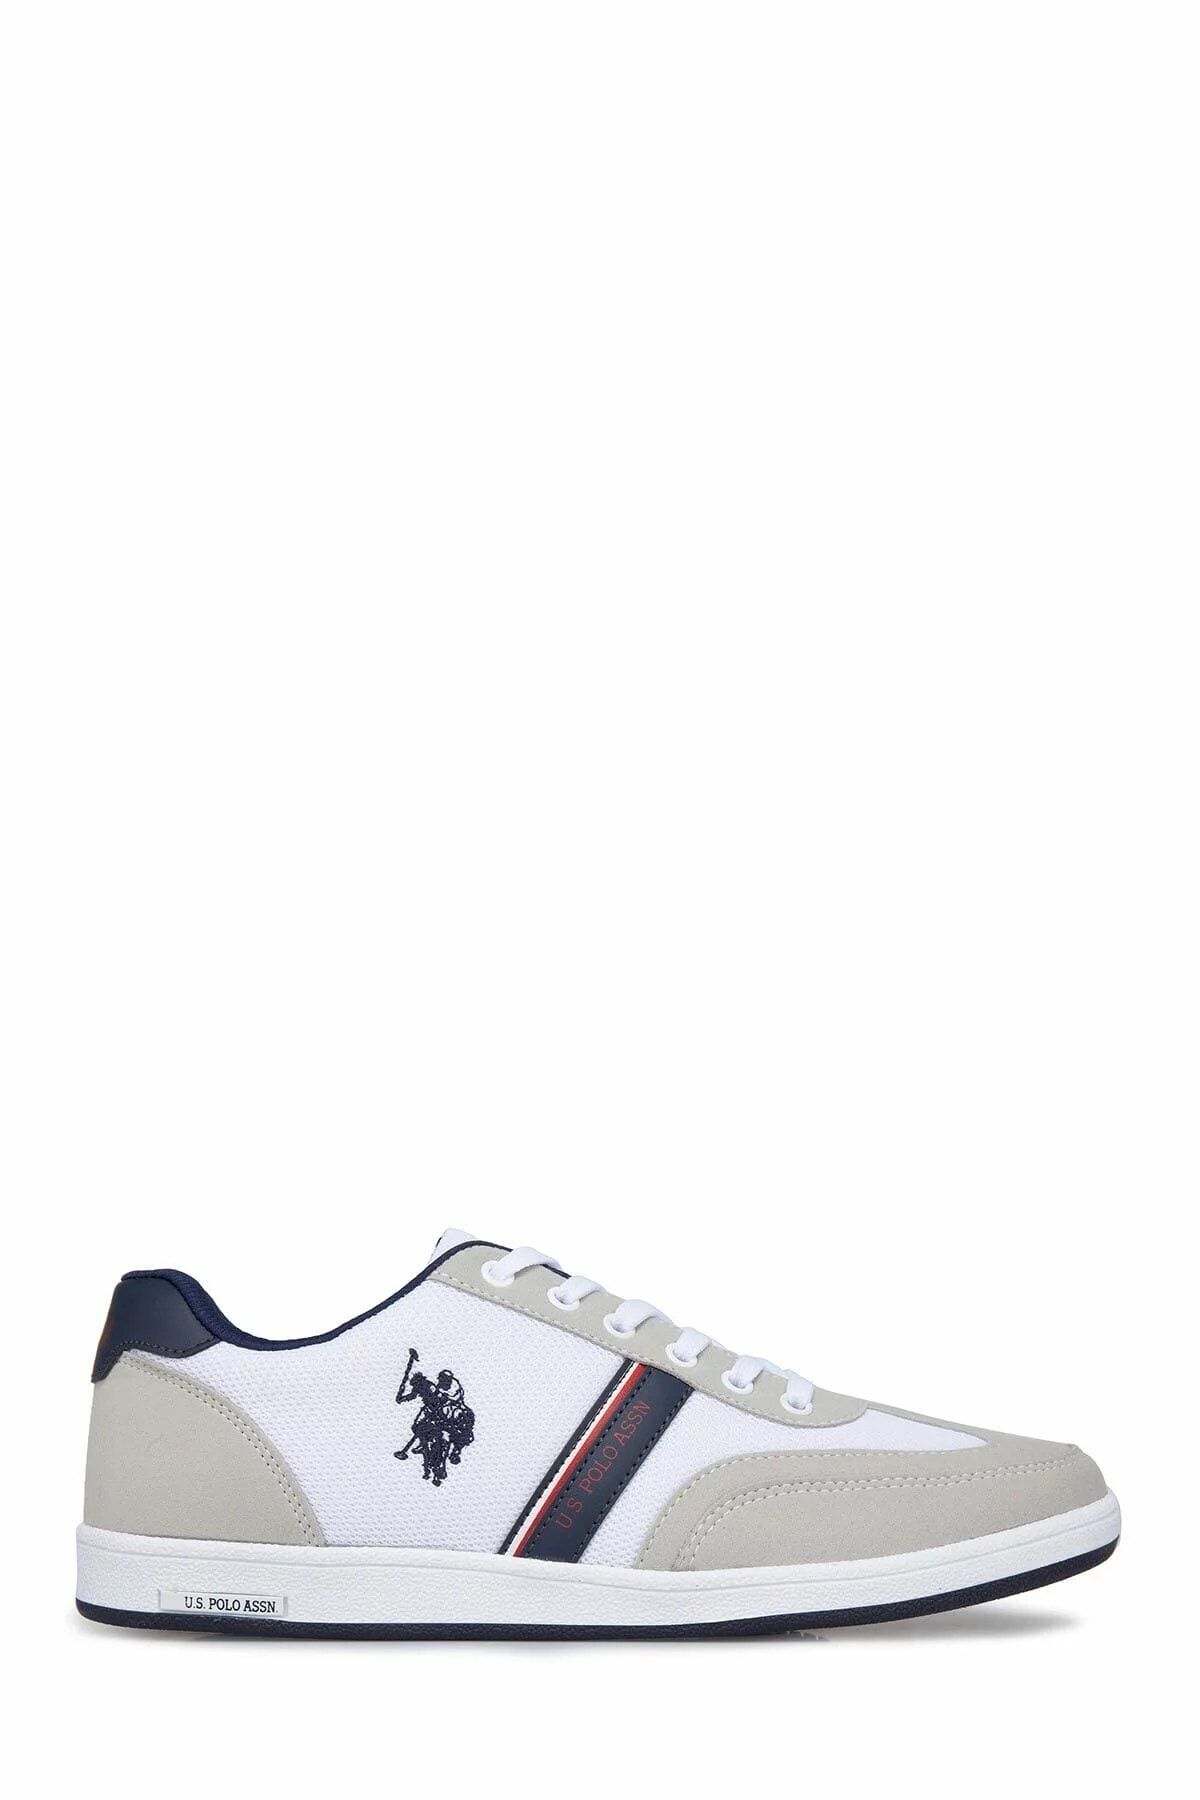 U.S. Polo Assn. U.s. Polo Assn. Kares Beyaz Bez Erkek Sneaker Ayakkabı 100248494